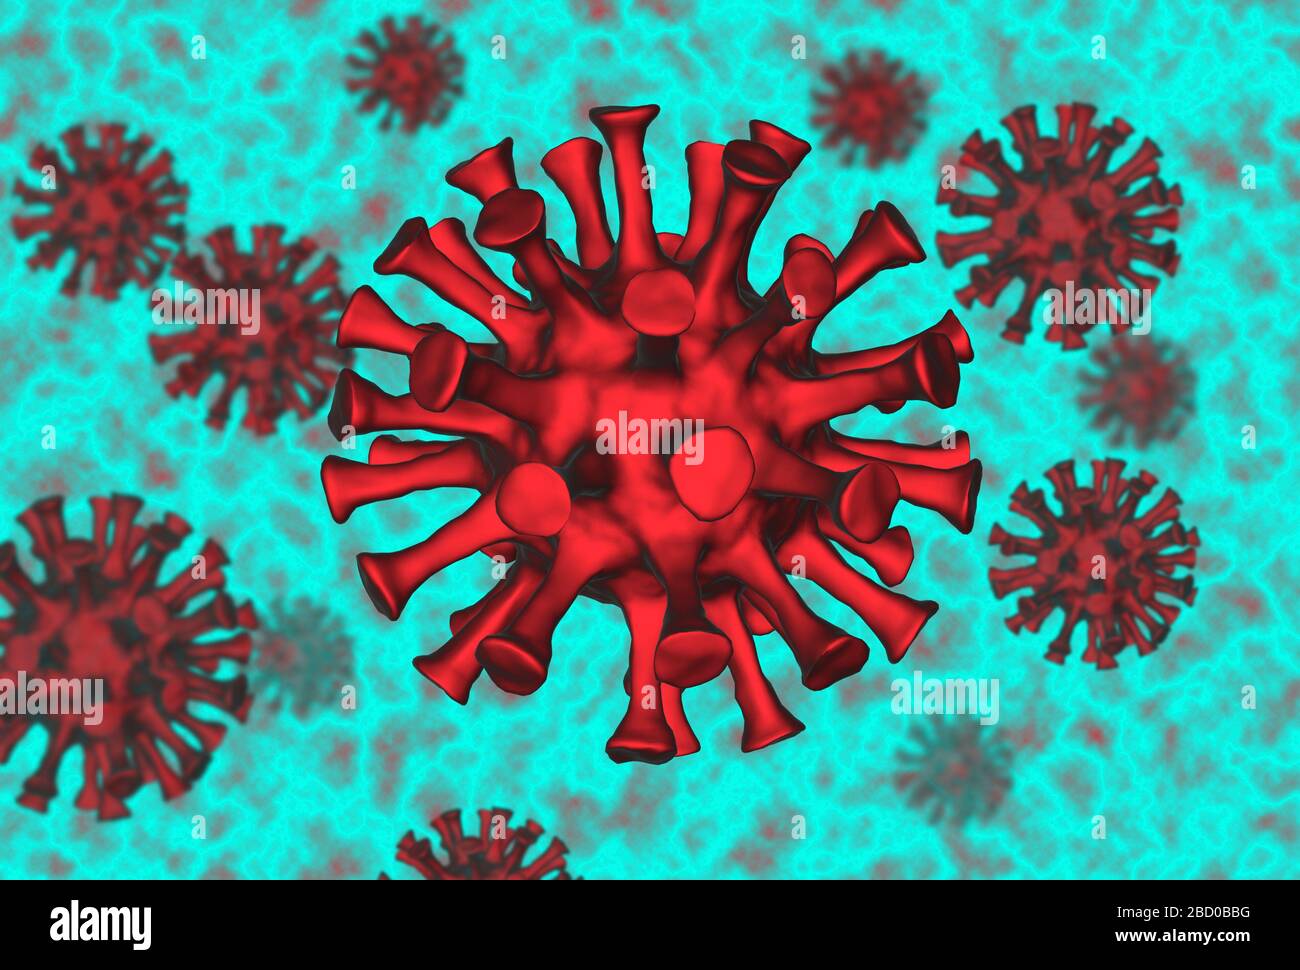 Modèle 3d d'un virus corona / agent pathogène du virus de l'ARN covid 19 sur fond coloré Banque D'Images